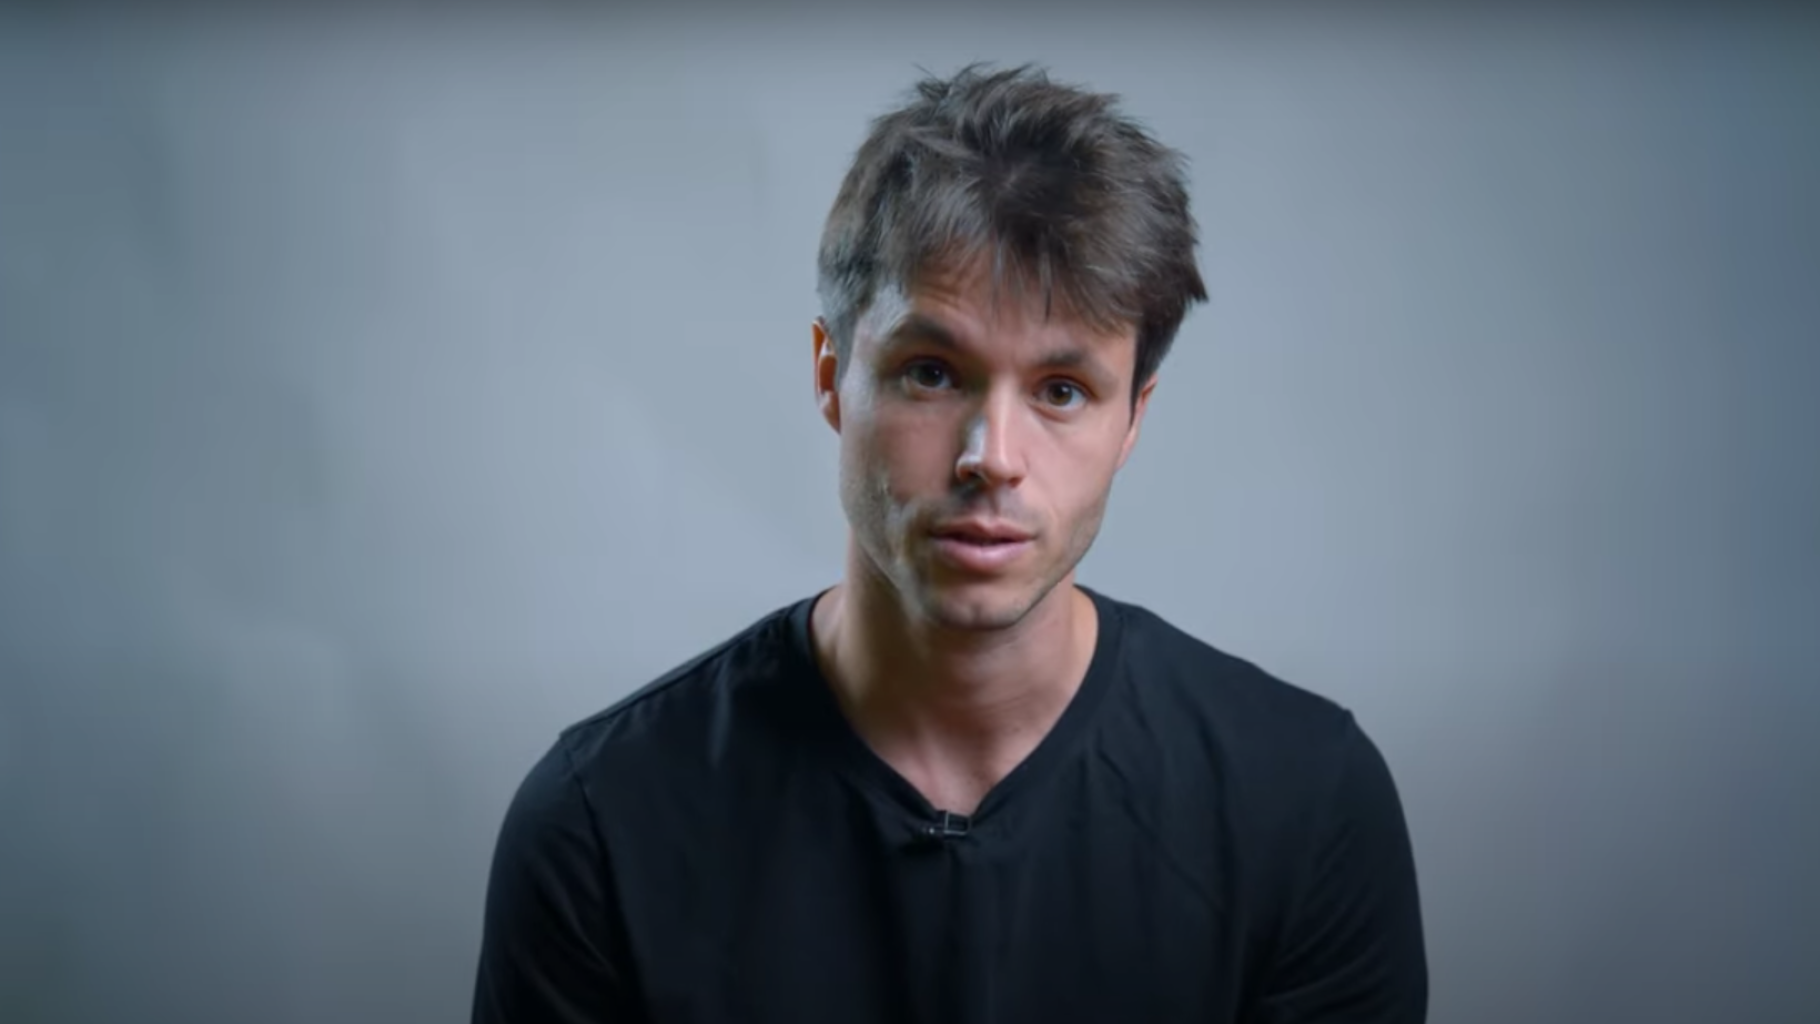 Violences sexuelles : Léo Grasset répond à Mediapart dans une vidéo - Le HuffPost